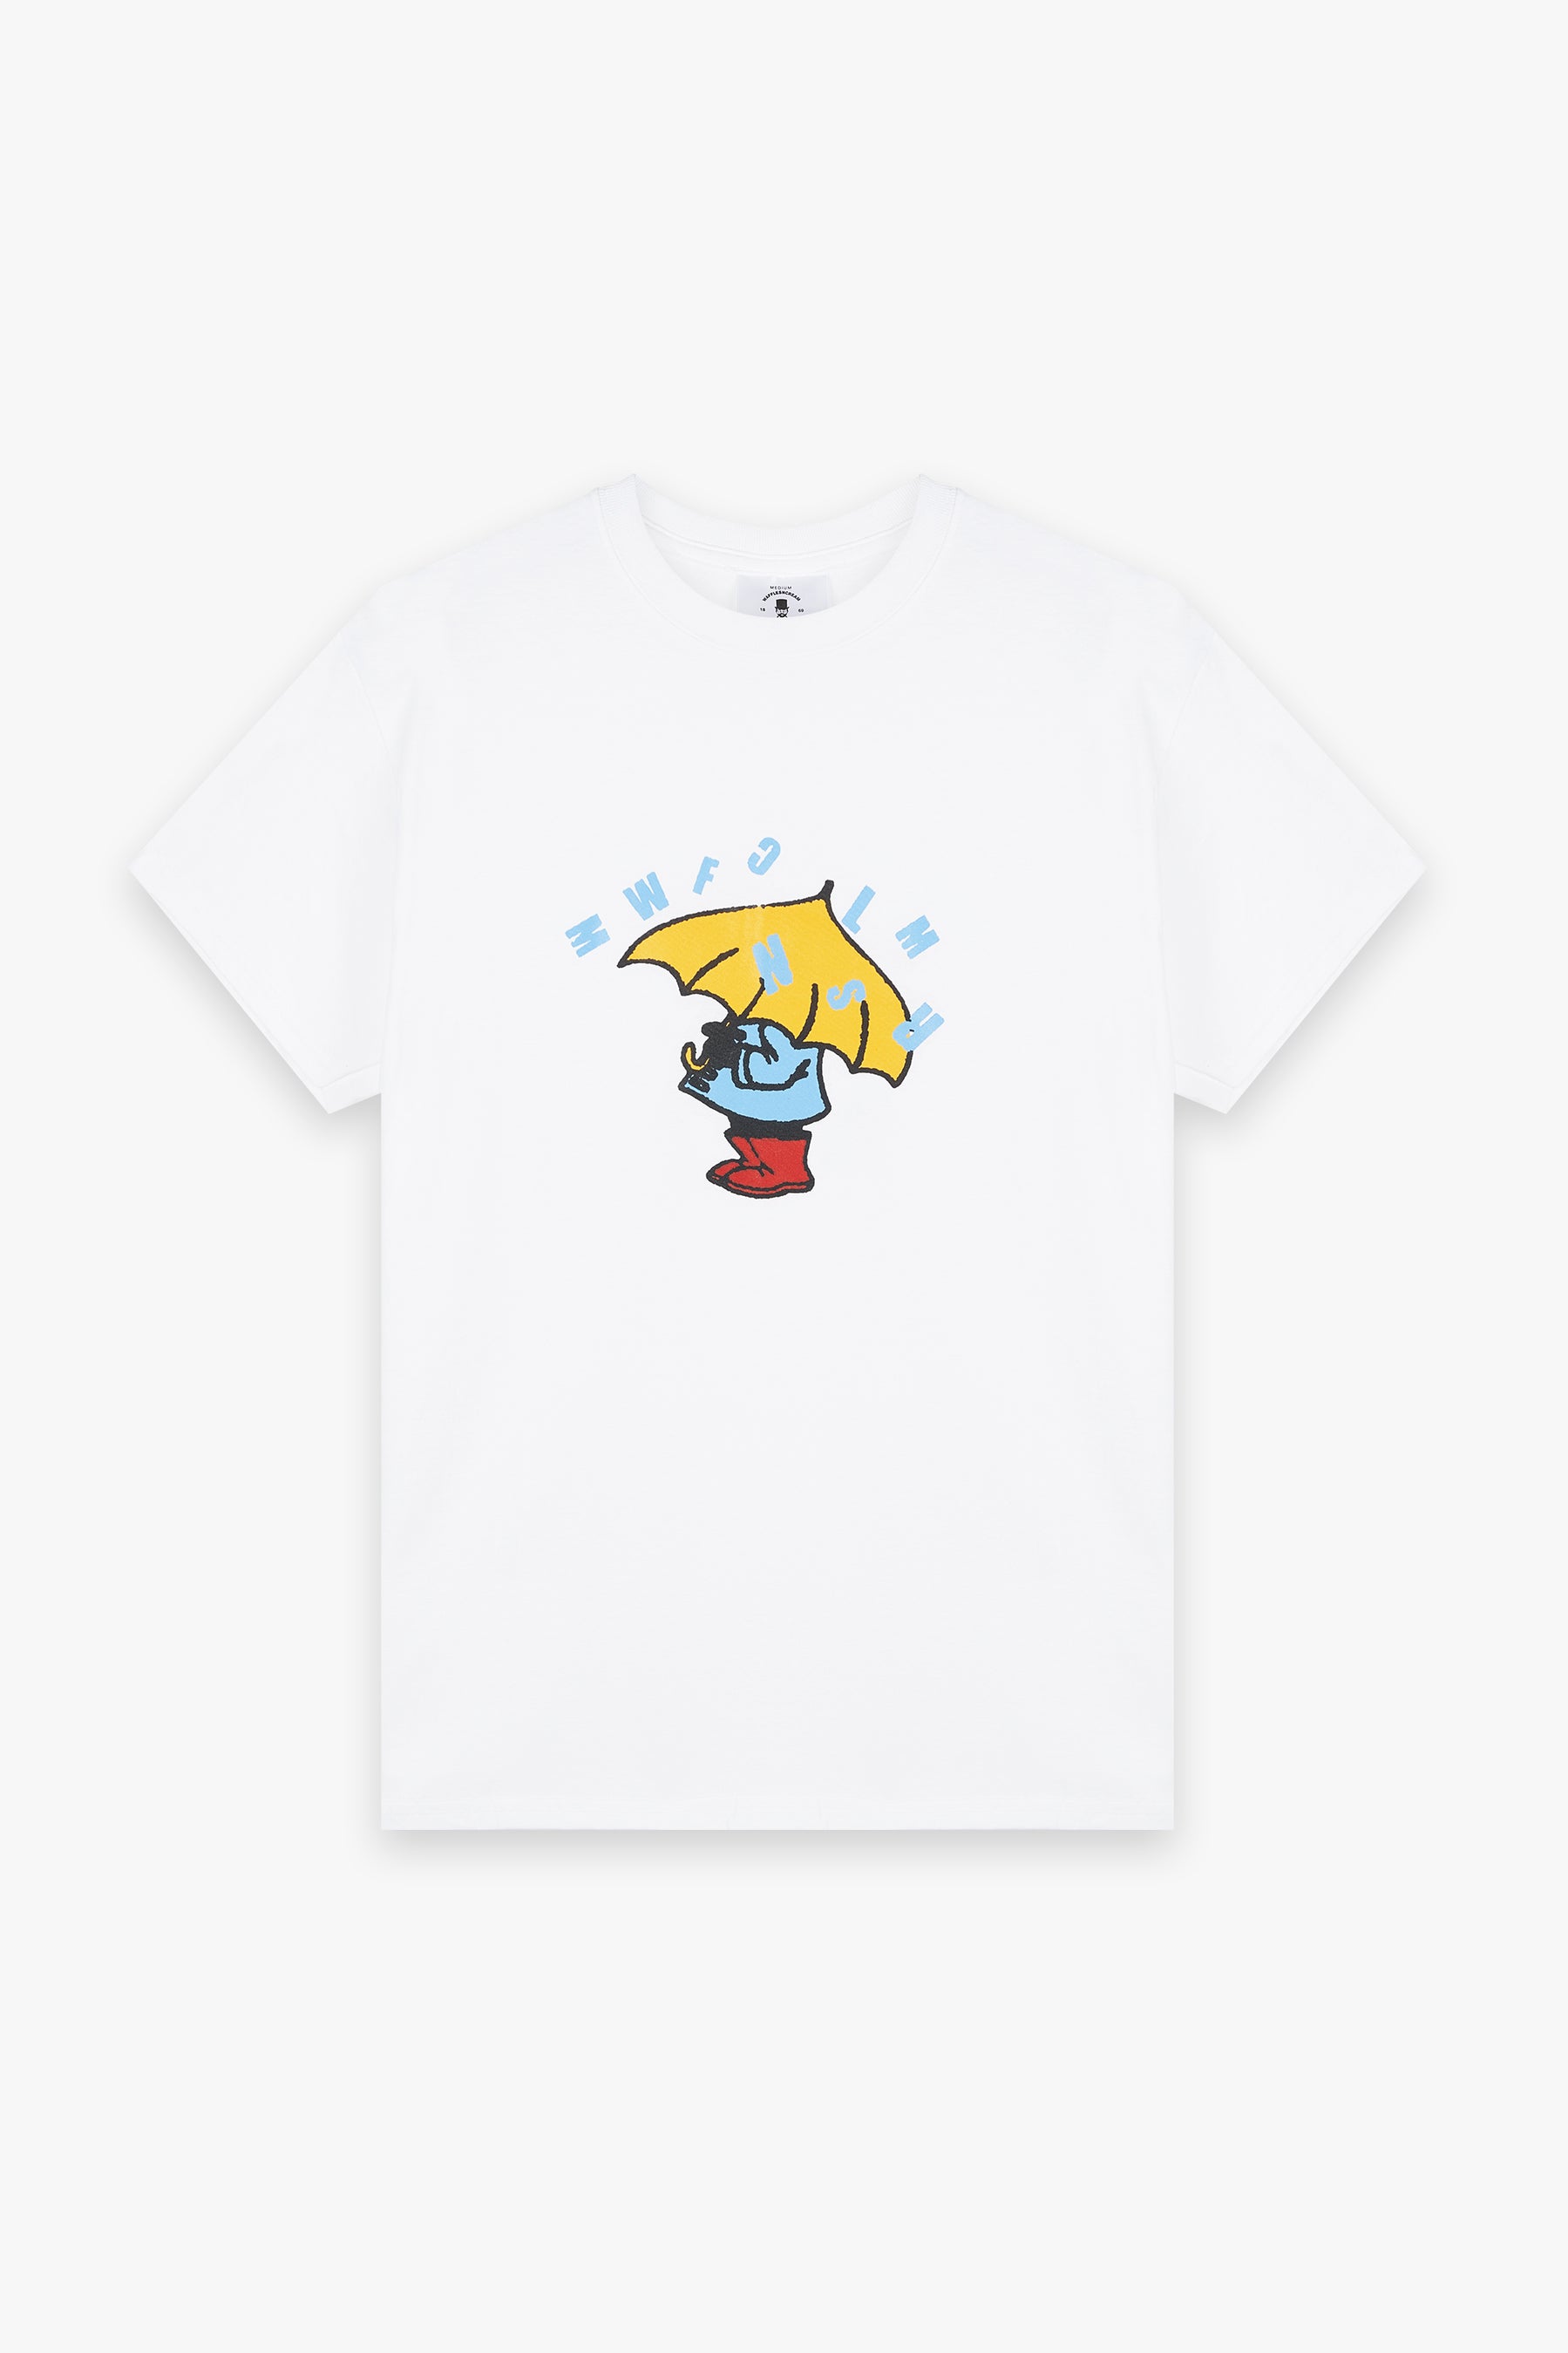 Umbrella man t-shirt